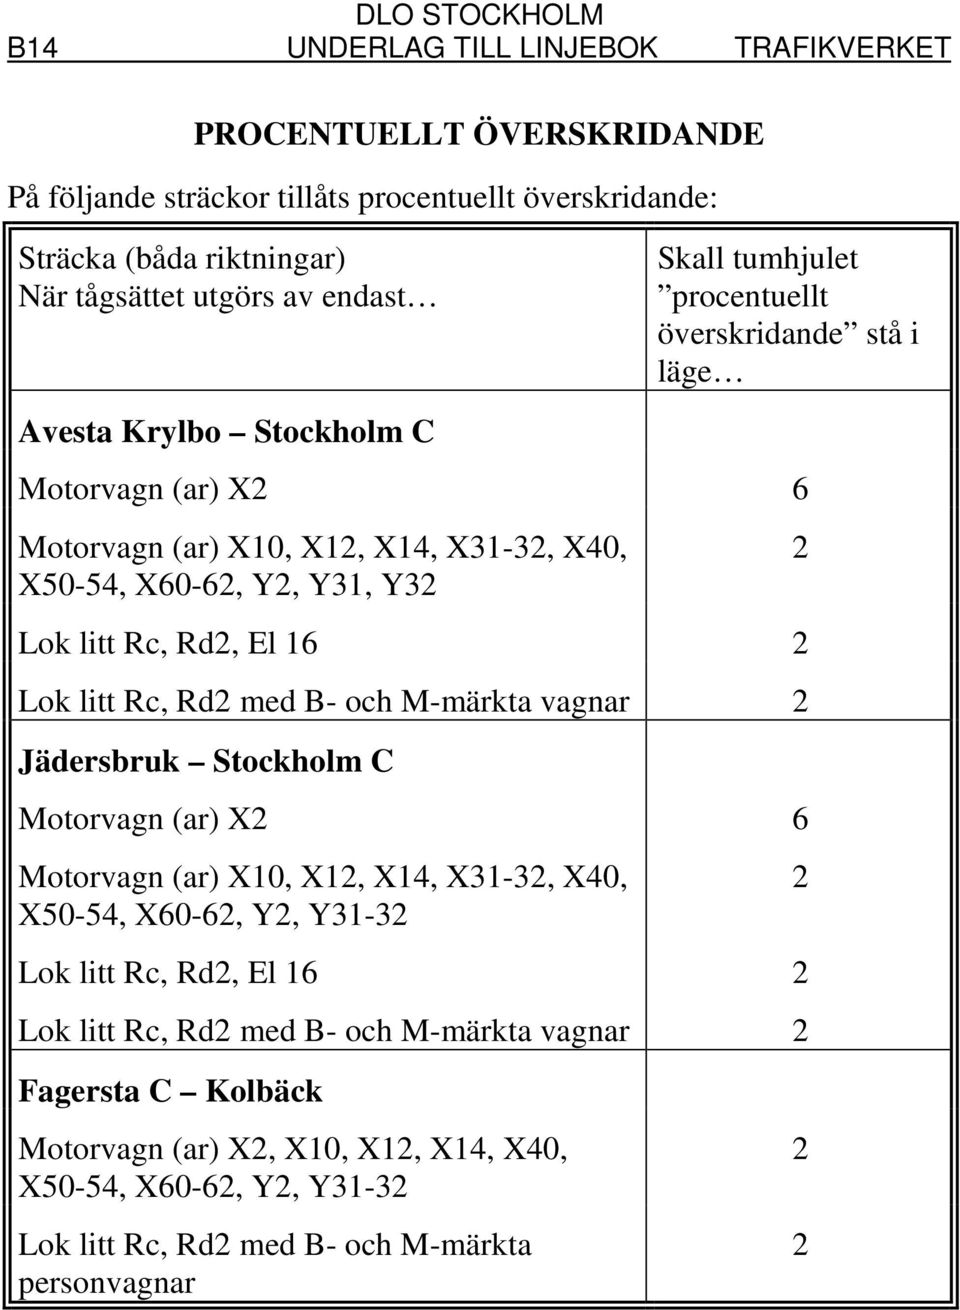 16 2 Lok litt Rc, Rd2 med B- och M-märkta vagnar 2 Jädersbruk Stockholm C Motorvagn (ar) X2 6 Motorvagn (ar) X10, X12, X14, X31-32, X40, X50-54, X60-62, Y2, Y31-32 Lok litt Rc, Rd2, El 16